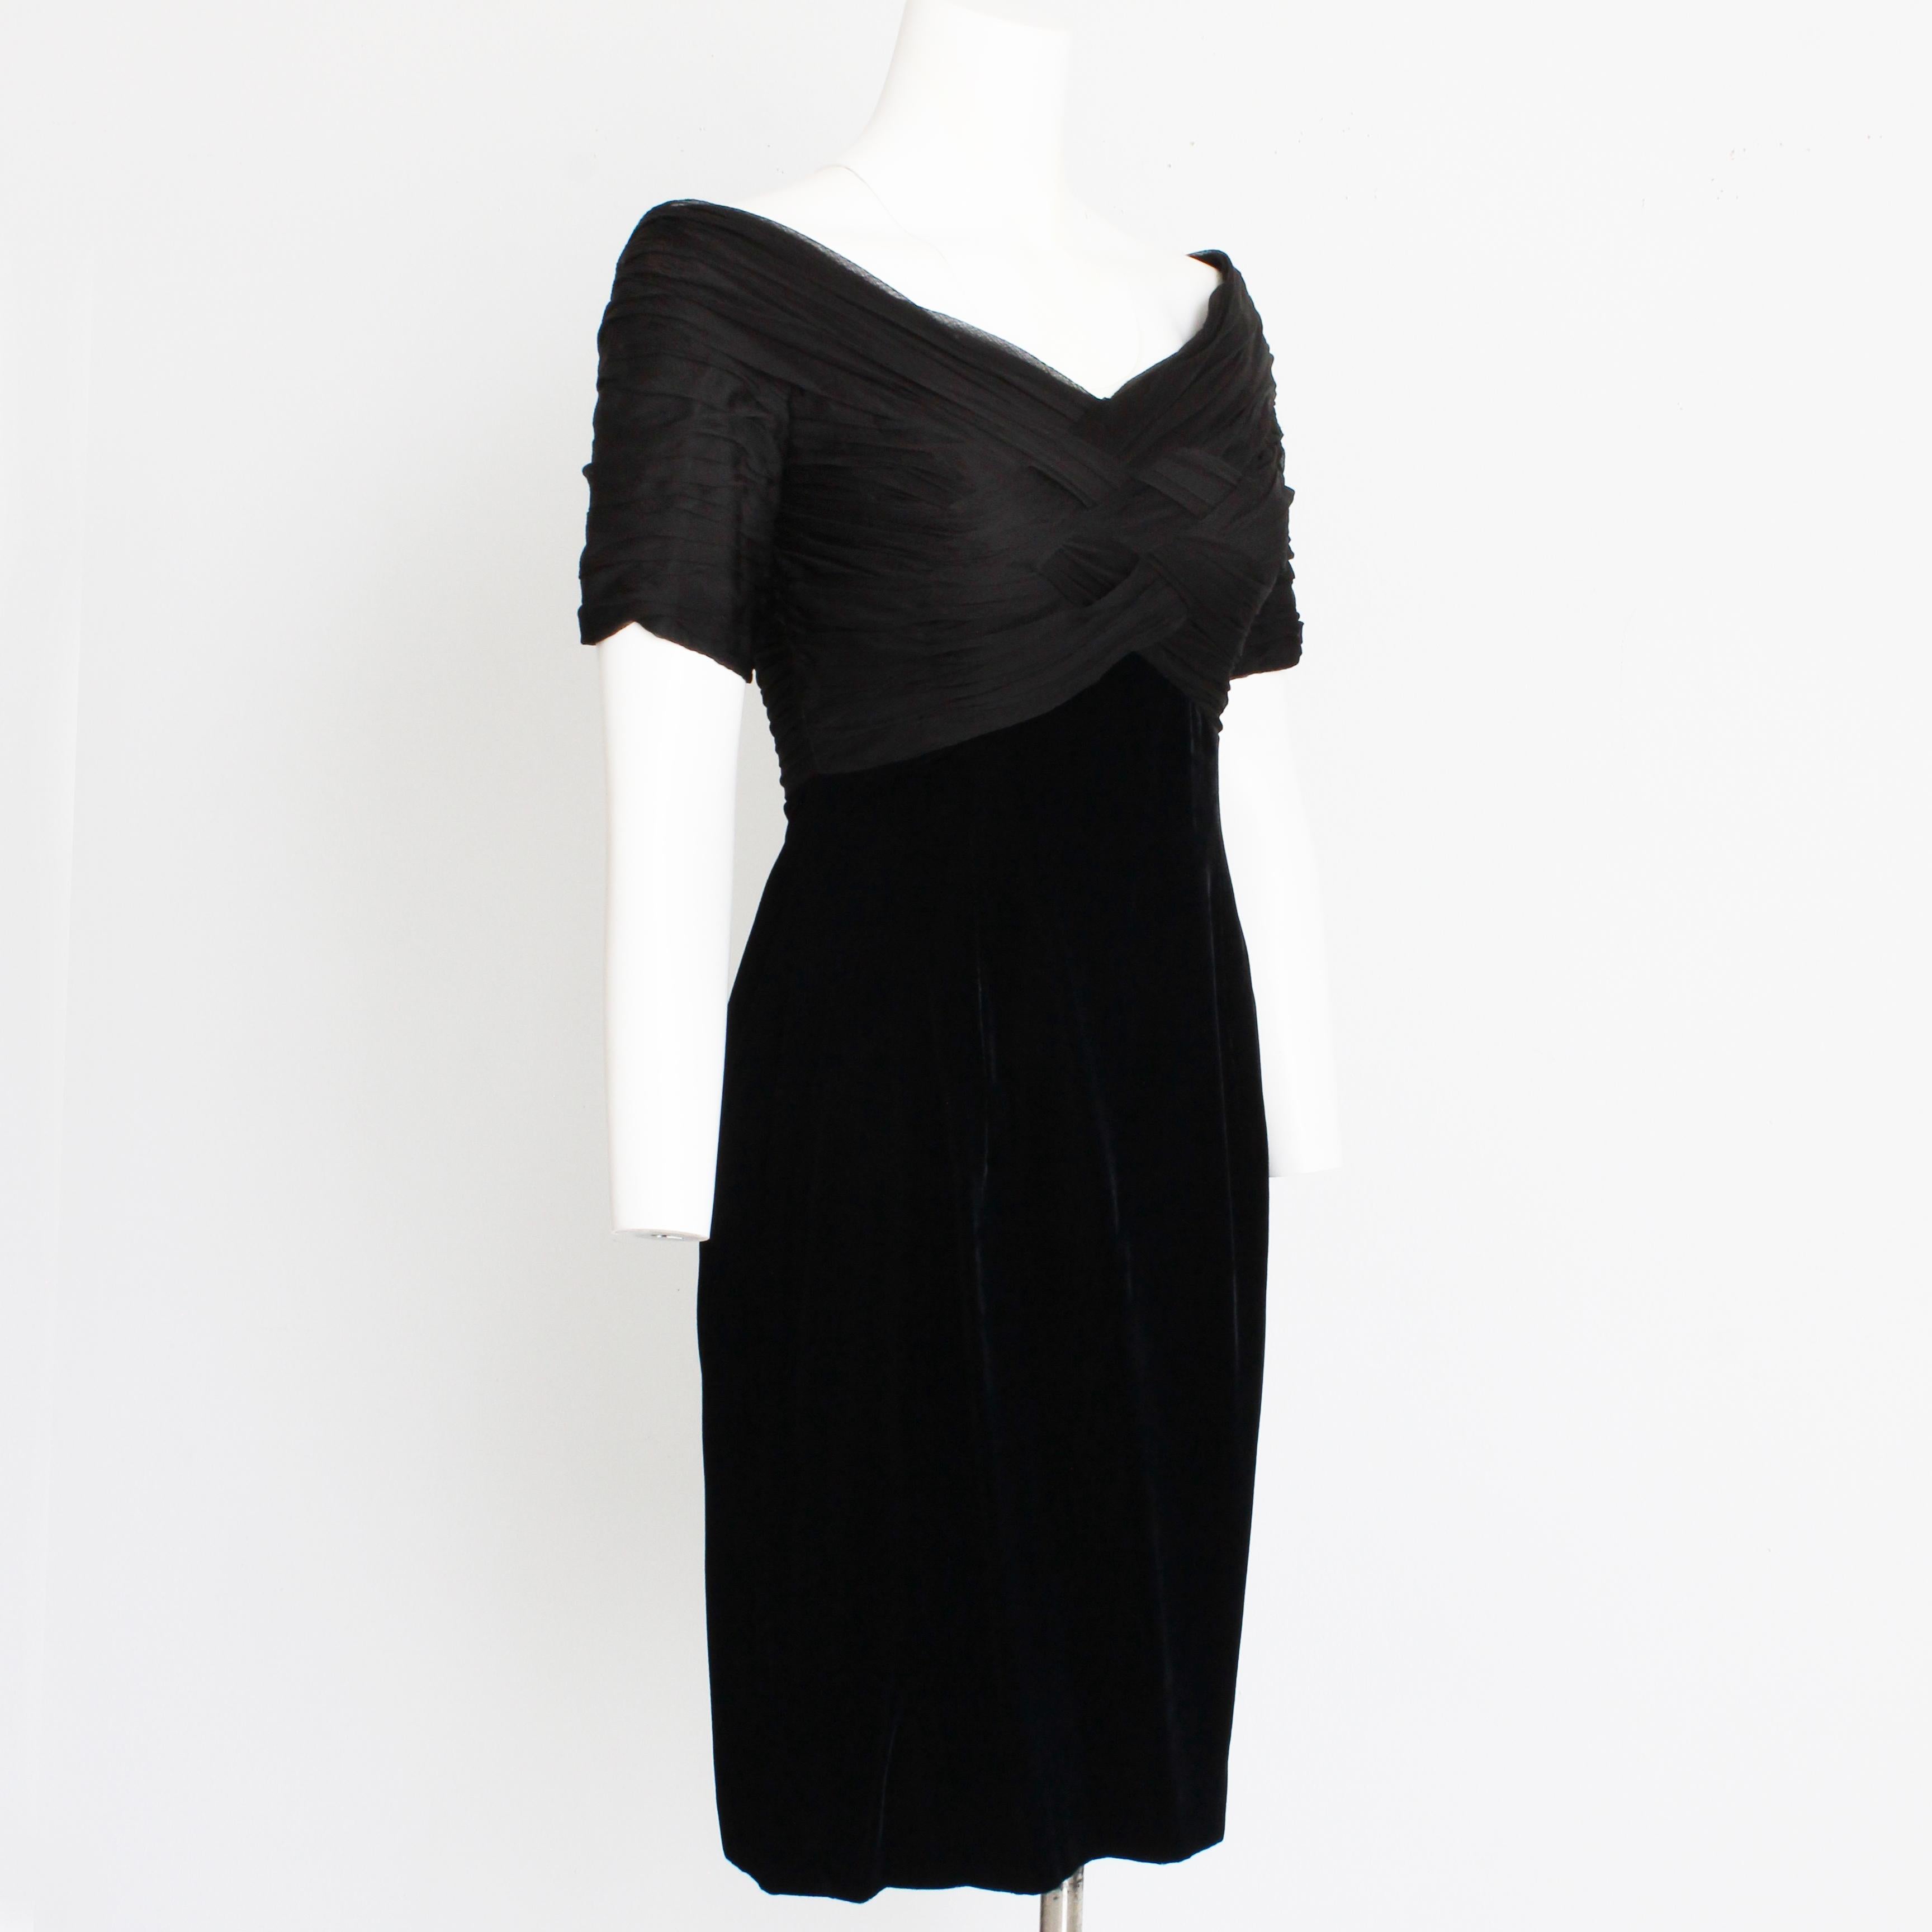 Authentisches, gebrauchtes Vintage Bellville Sassoon Lorcan Mullany schwarzes Cocktailkleid mit gewebtem Seidenmieder, wahrscheinlich aus den 90er Jahren.  Es besteht aus Seide und Viskose, hat ein wunderschönes gewebtes Mieder, eine Empire-Taille